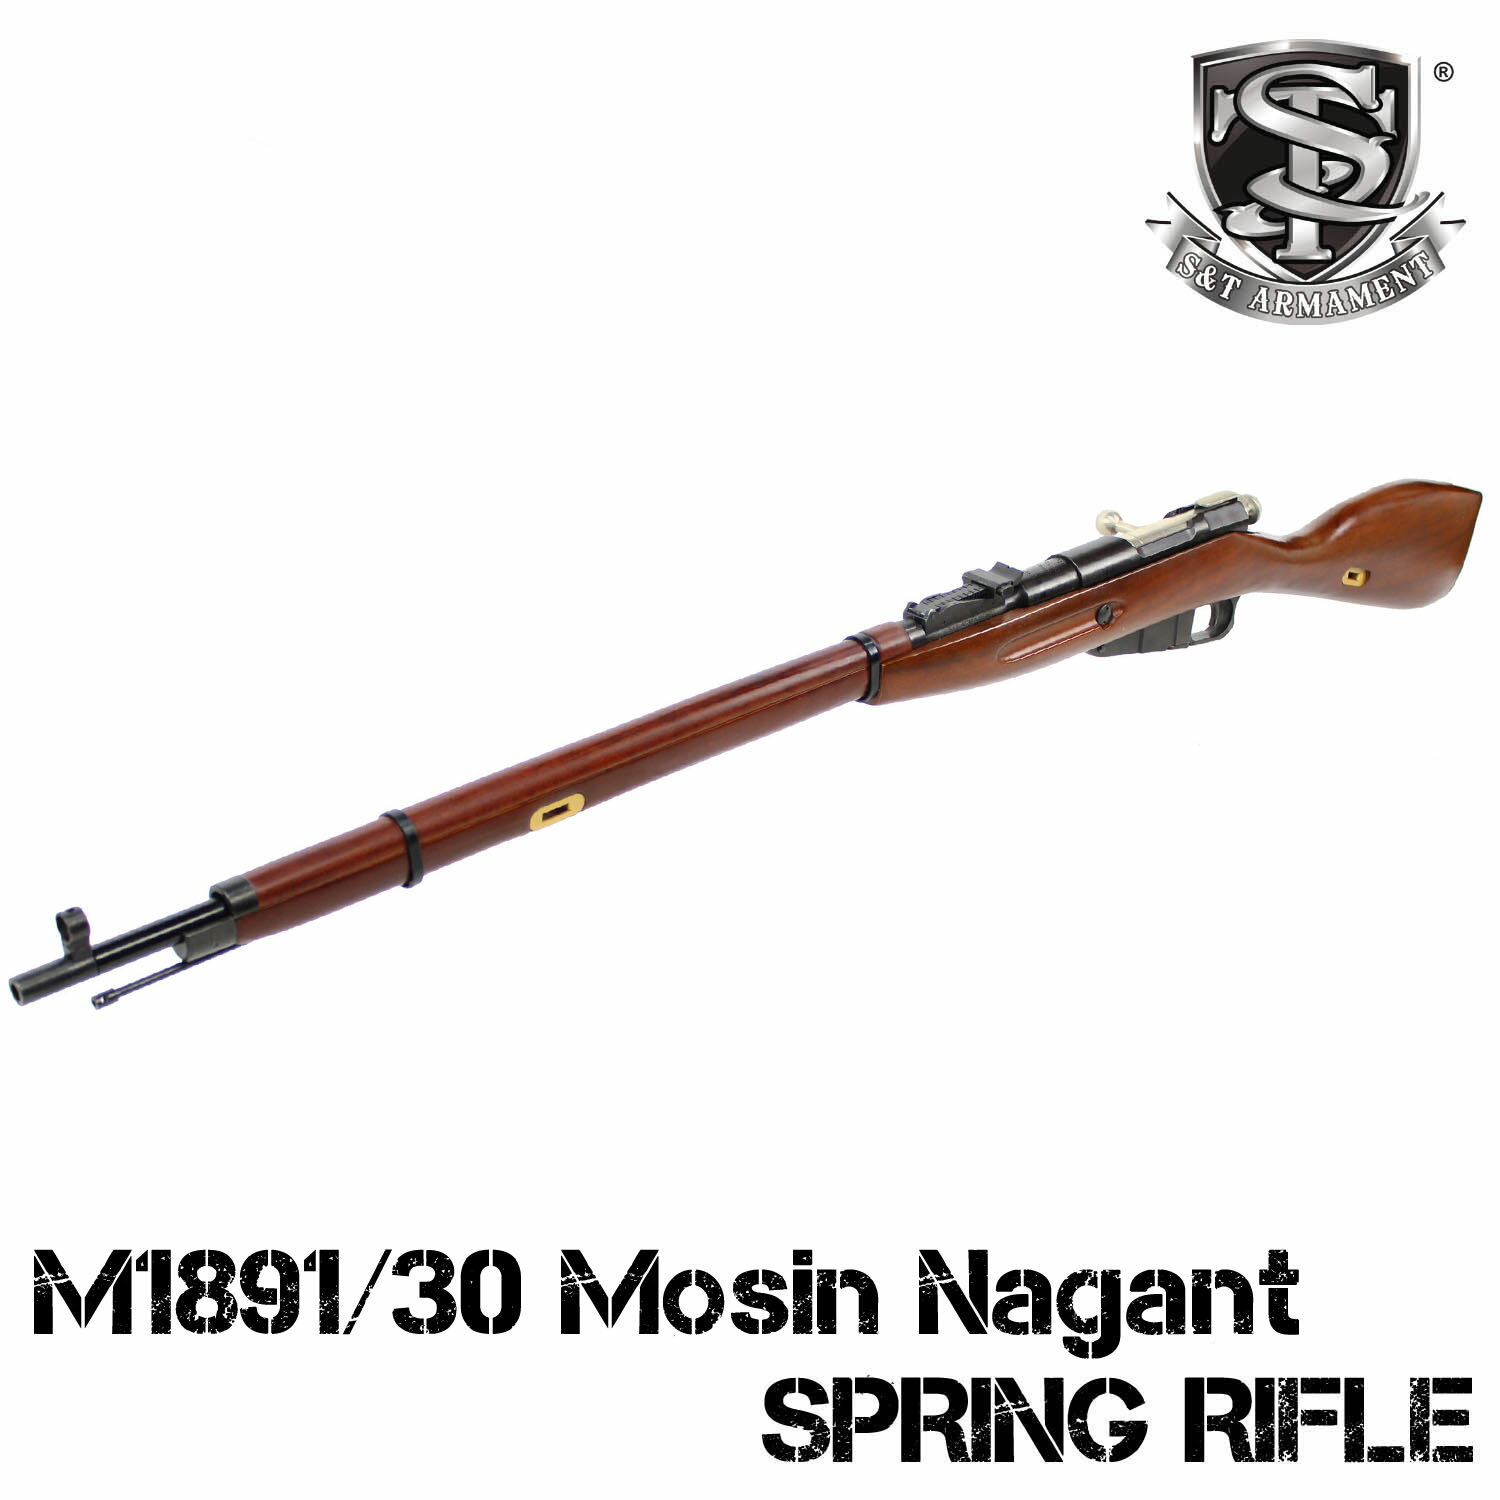 《5月15日再入荷商品》S T M1891/30 Mosin Nagant エアーコッキングライフル（リアルウッド）